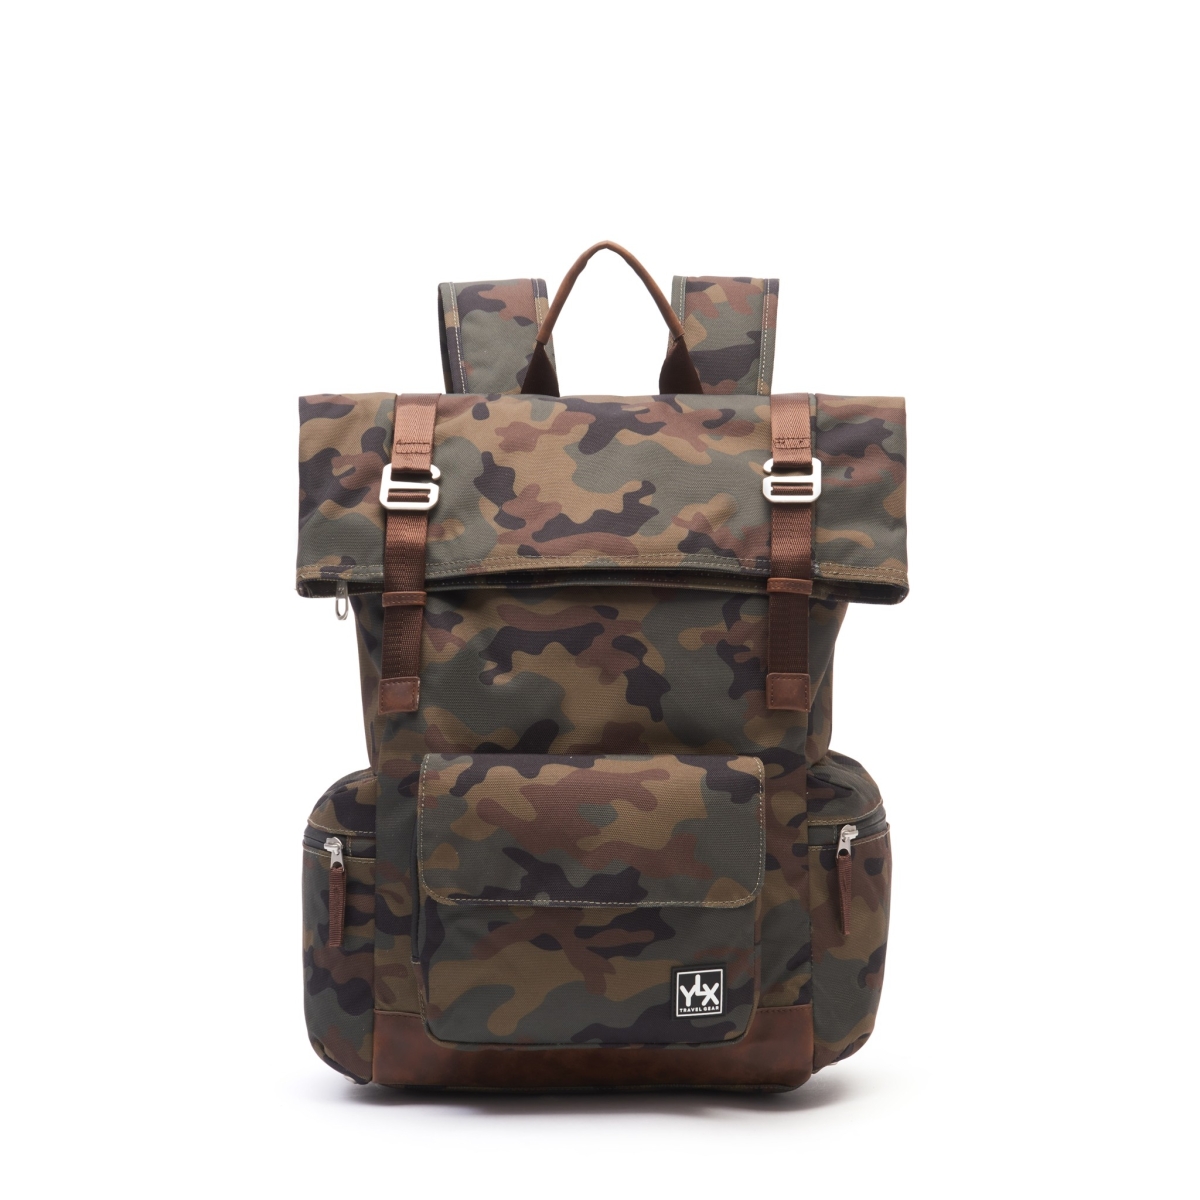 YLX Original Backpack 2.0 | Camo Army